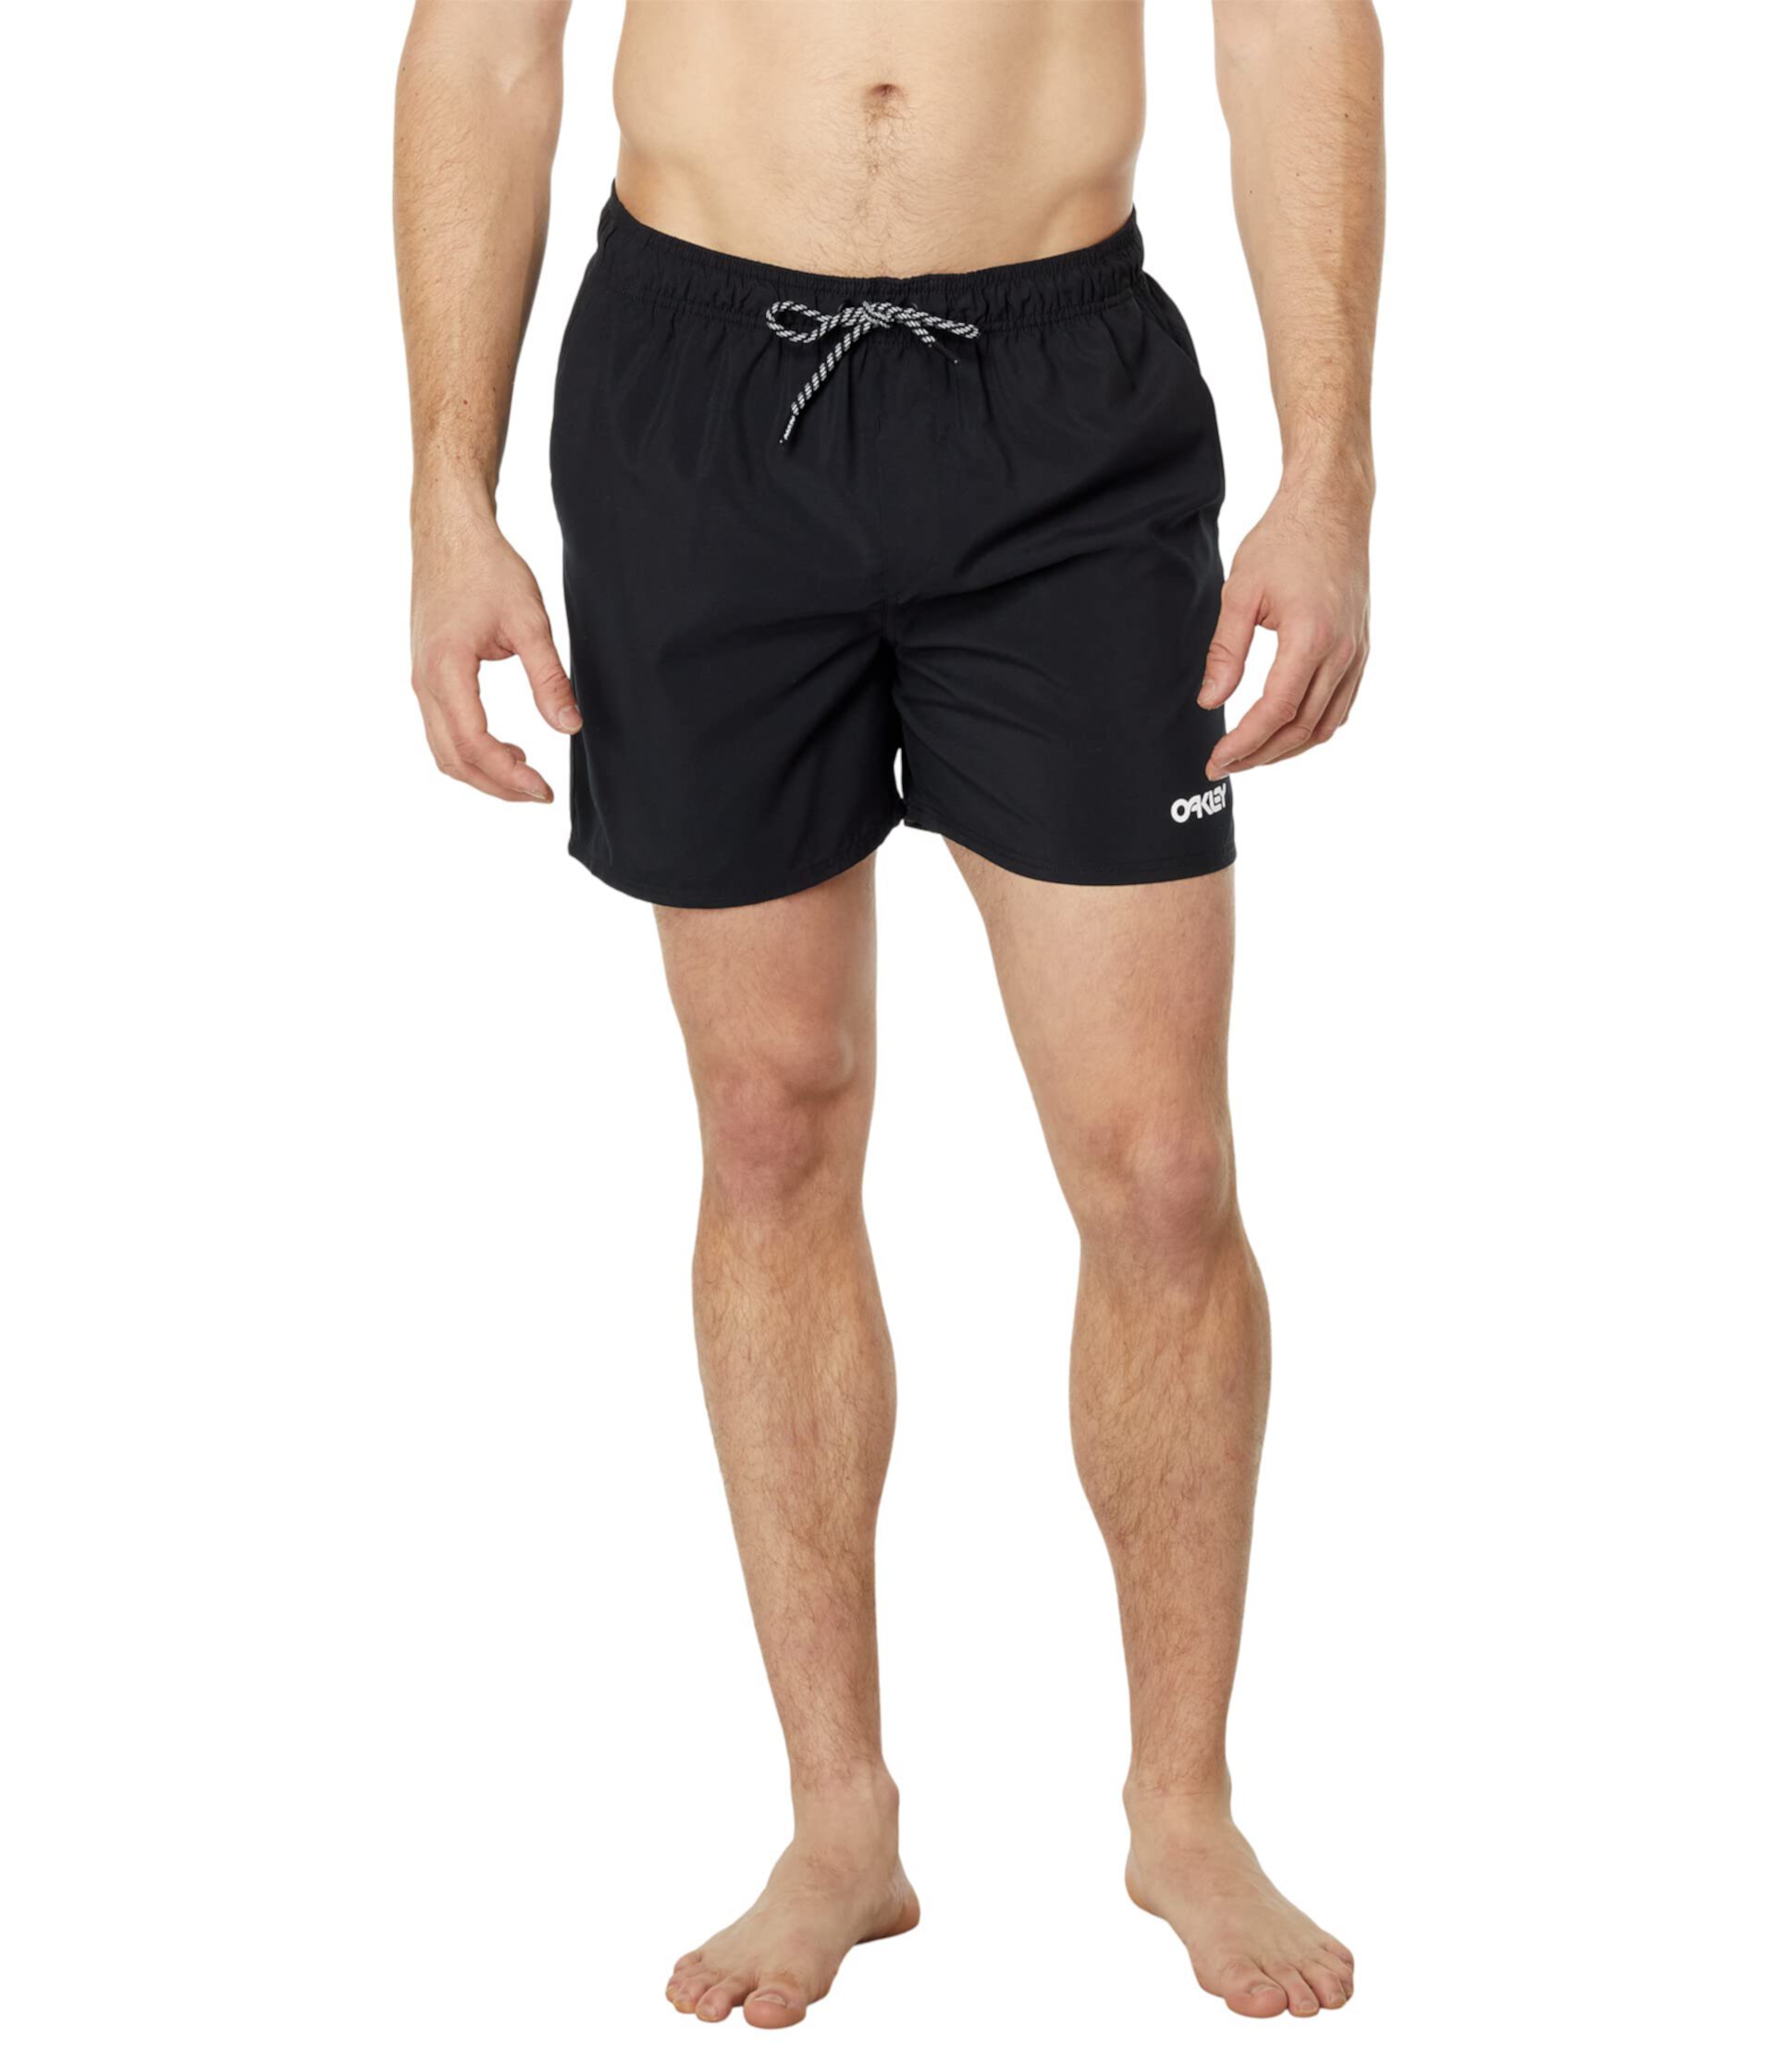 Пляжный волейбол 16 дюймов пляжные шорты Oakley